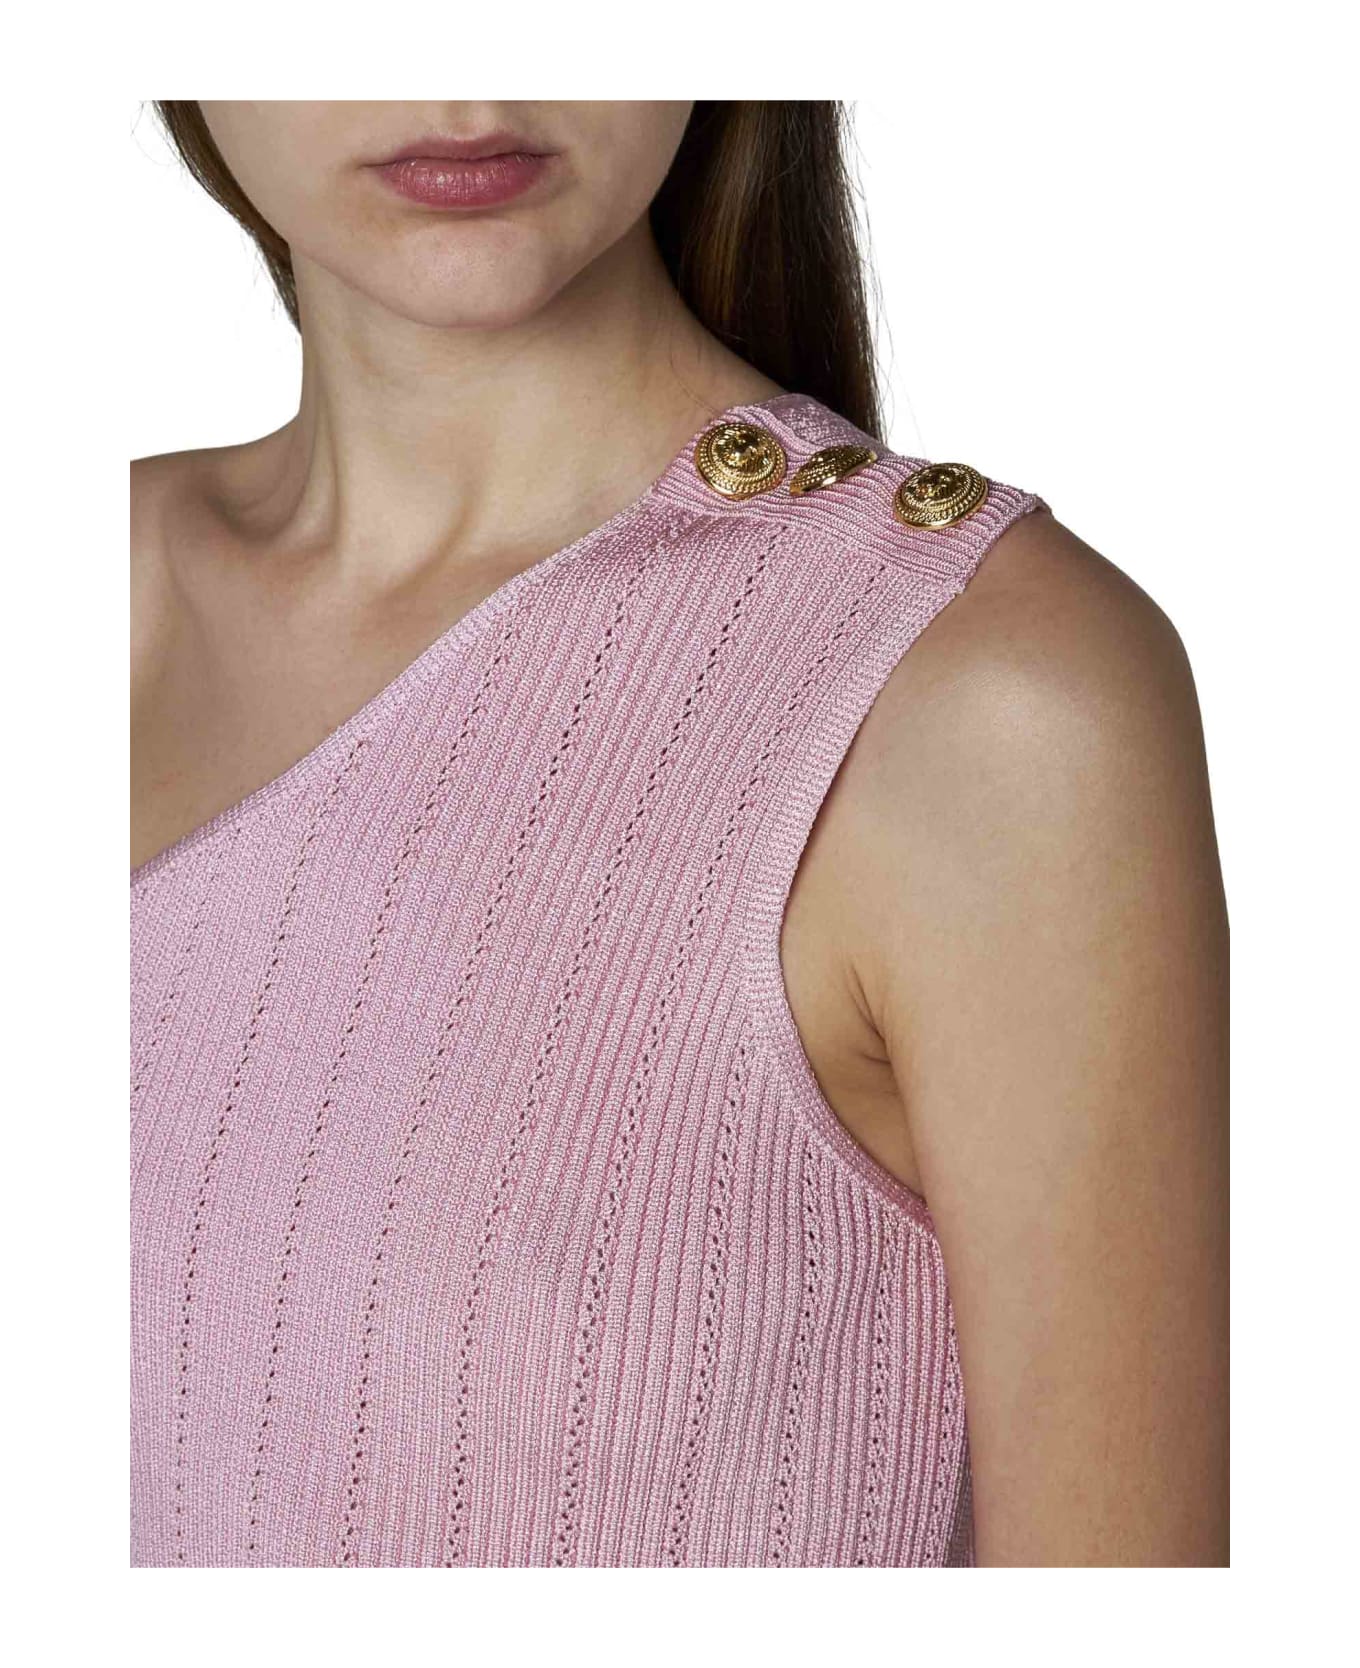 Balmain Asymmetric Knit Top - Rose